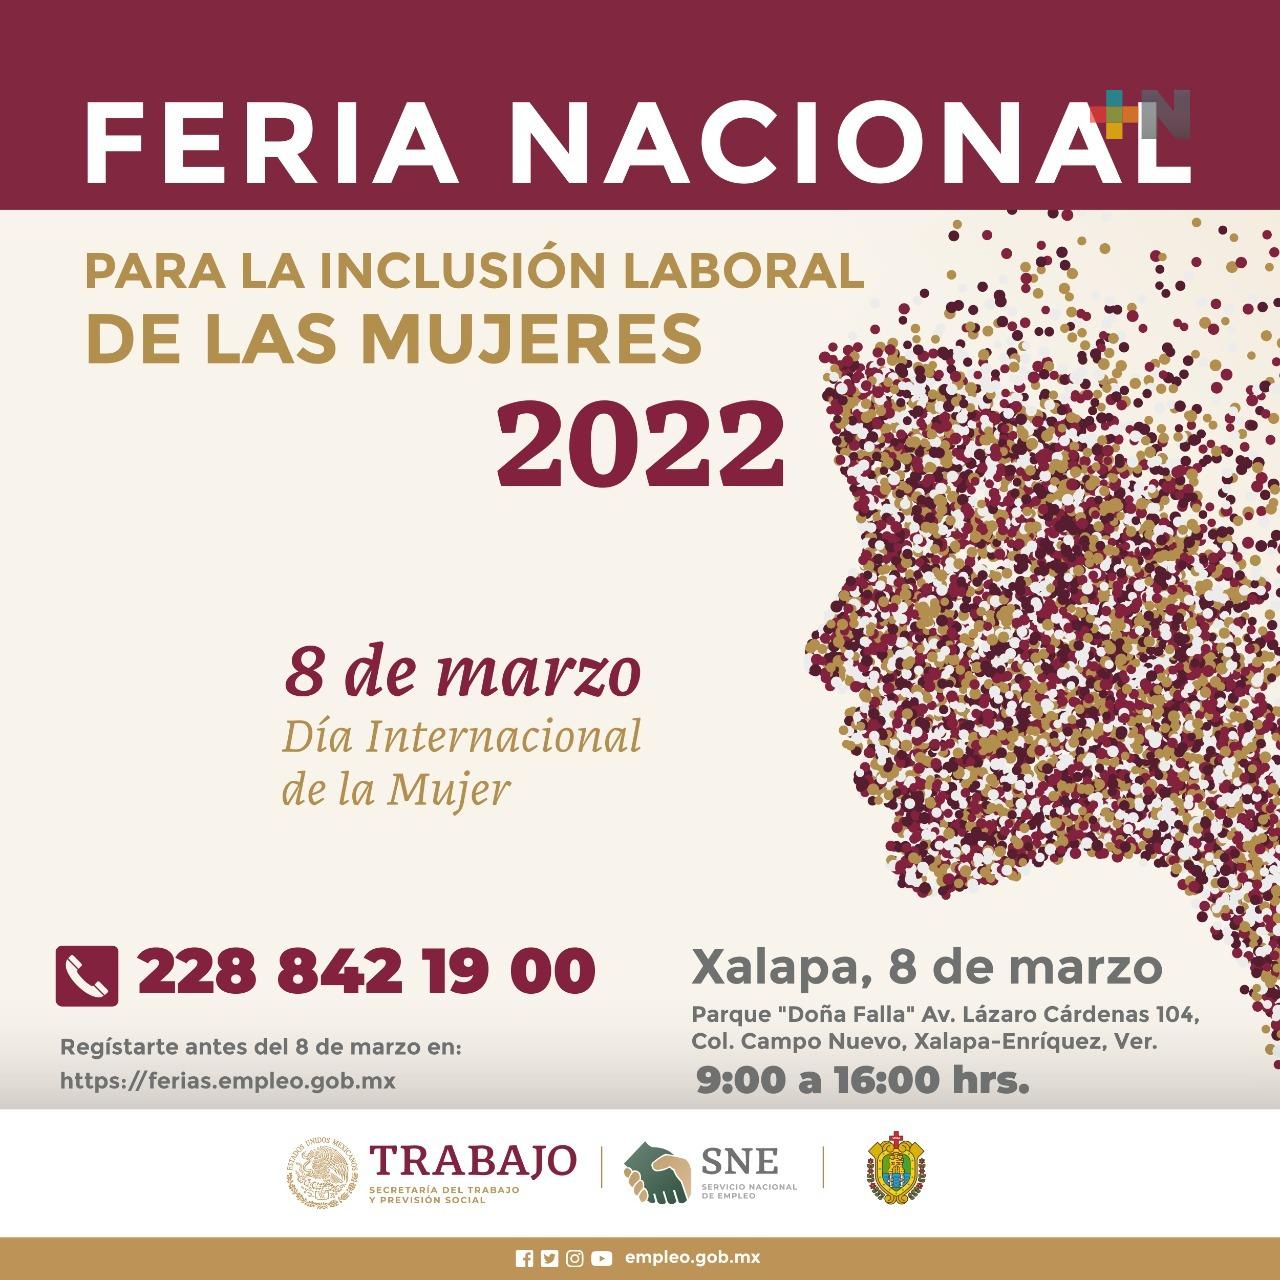 ¿Estás sin chamba? Acude este 8 de marzo a la Feria Nacional para la Inclusión Laboral de las Mujeres Veracruz 2022